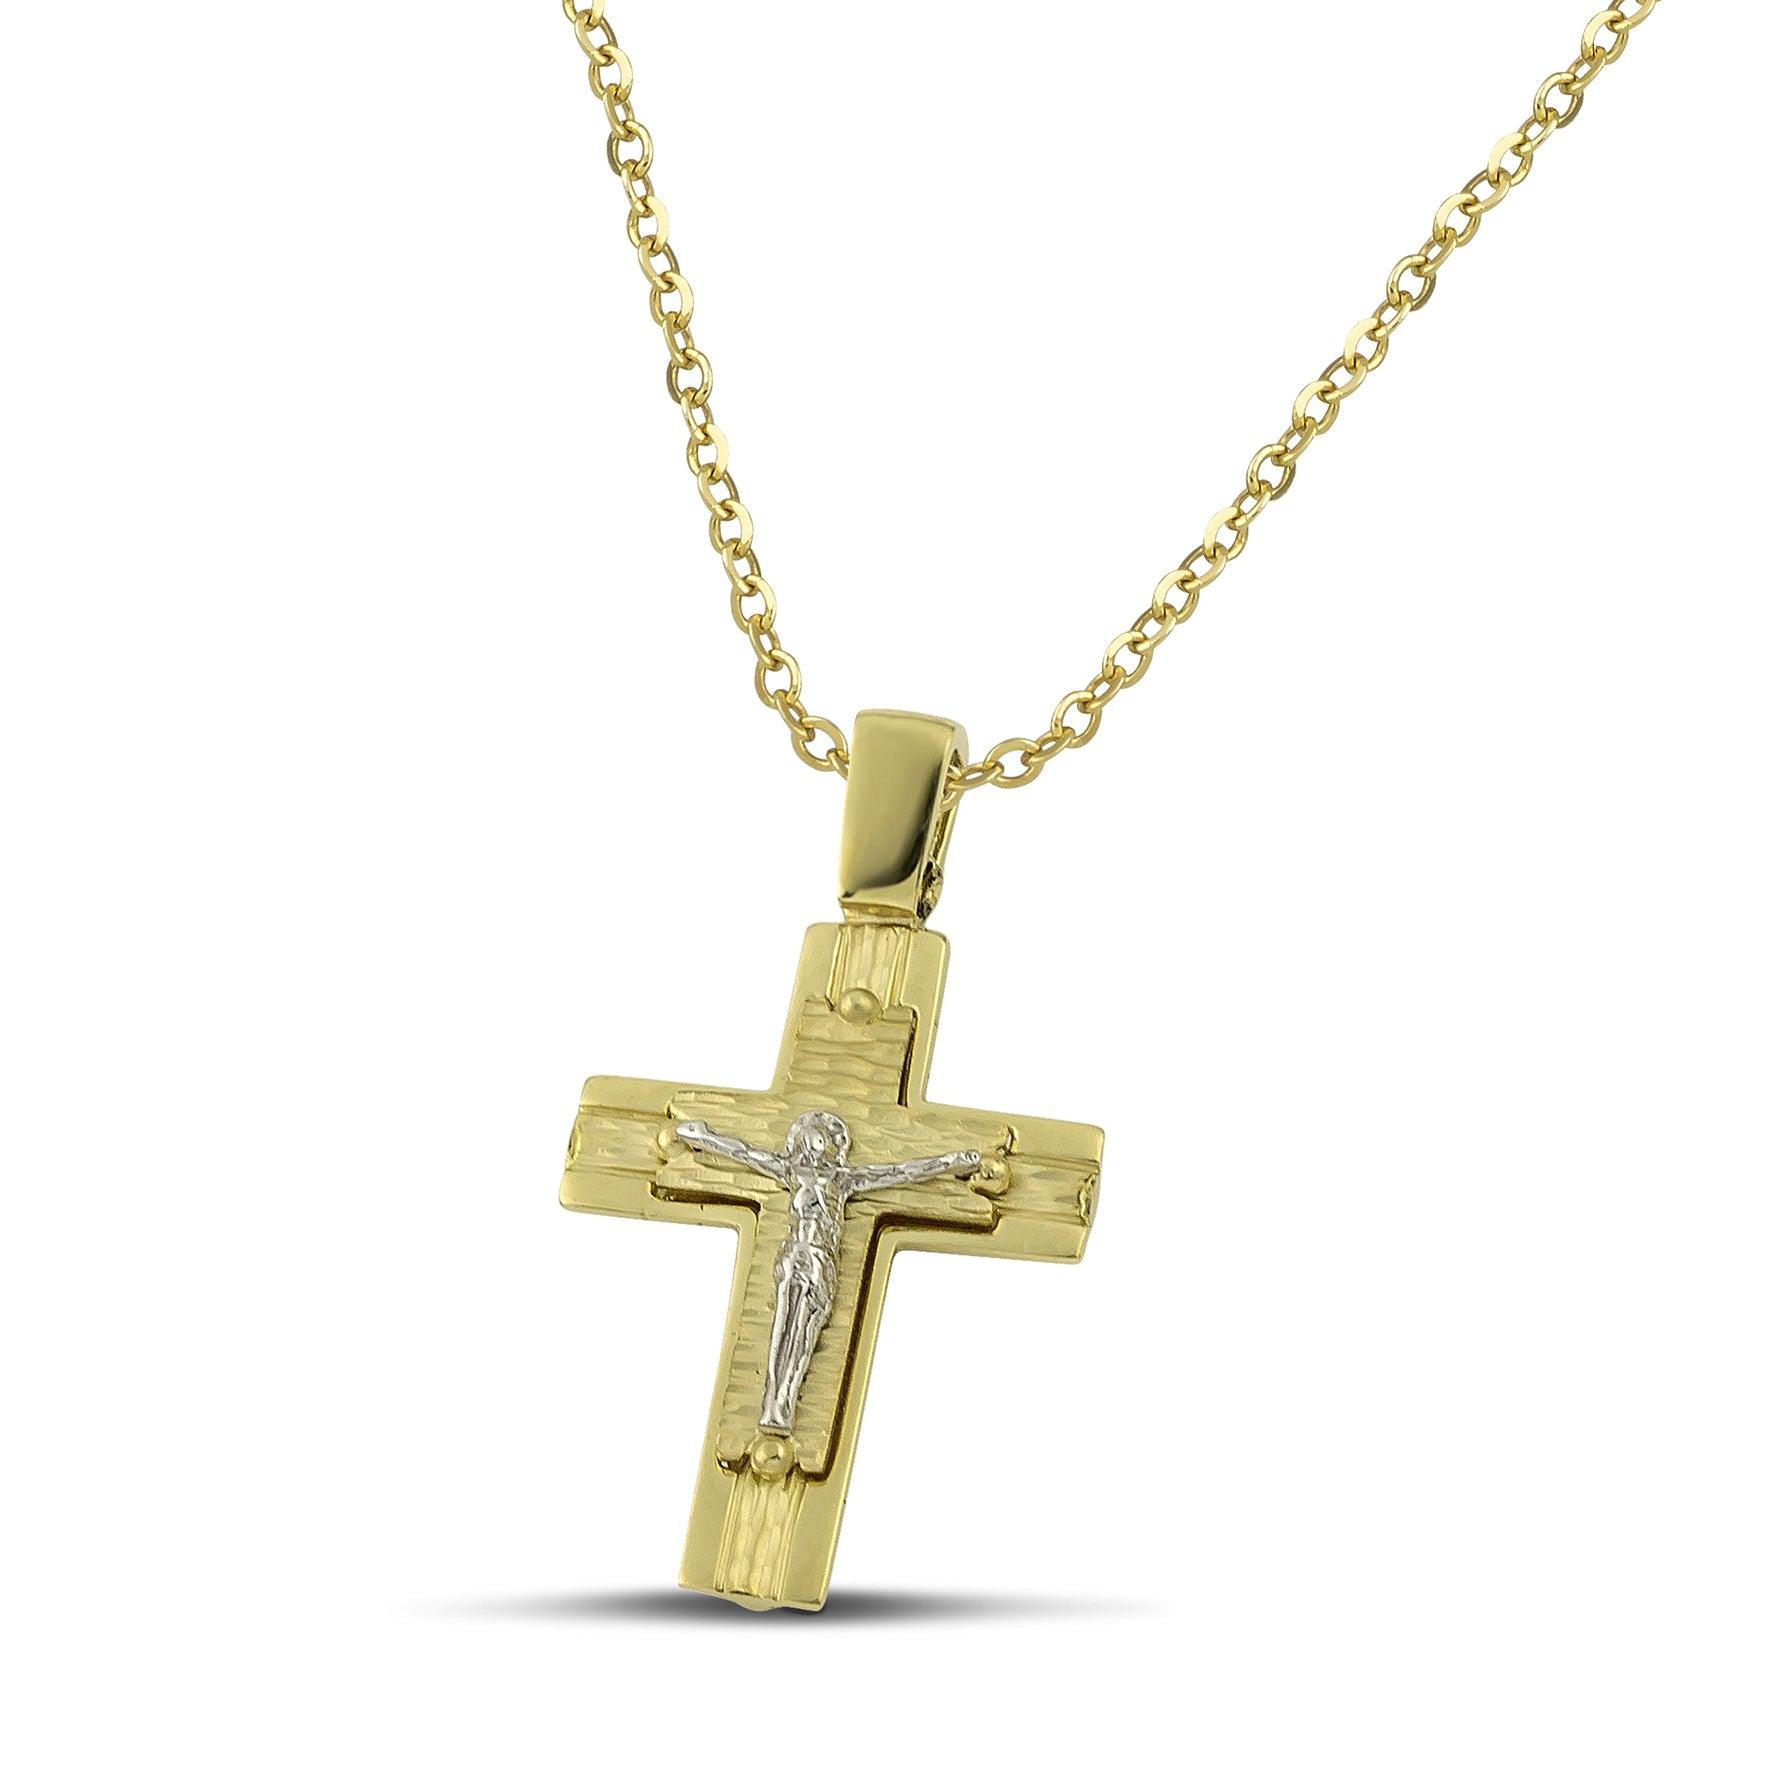 Ανδρικός βαπτιστικός σταυρός από χρυσό Κ14 διπλής όψης, φορεμένος σε λεπτή αλυσίδα. 